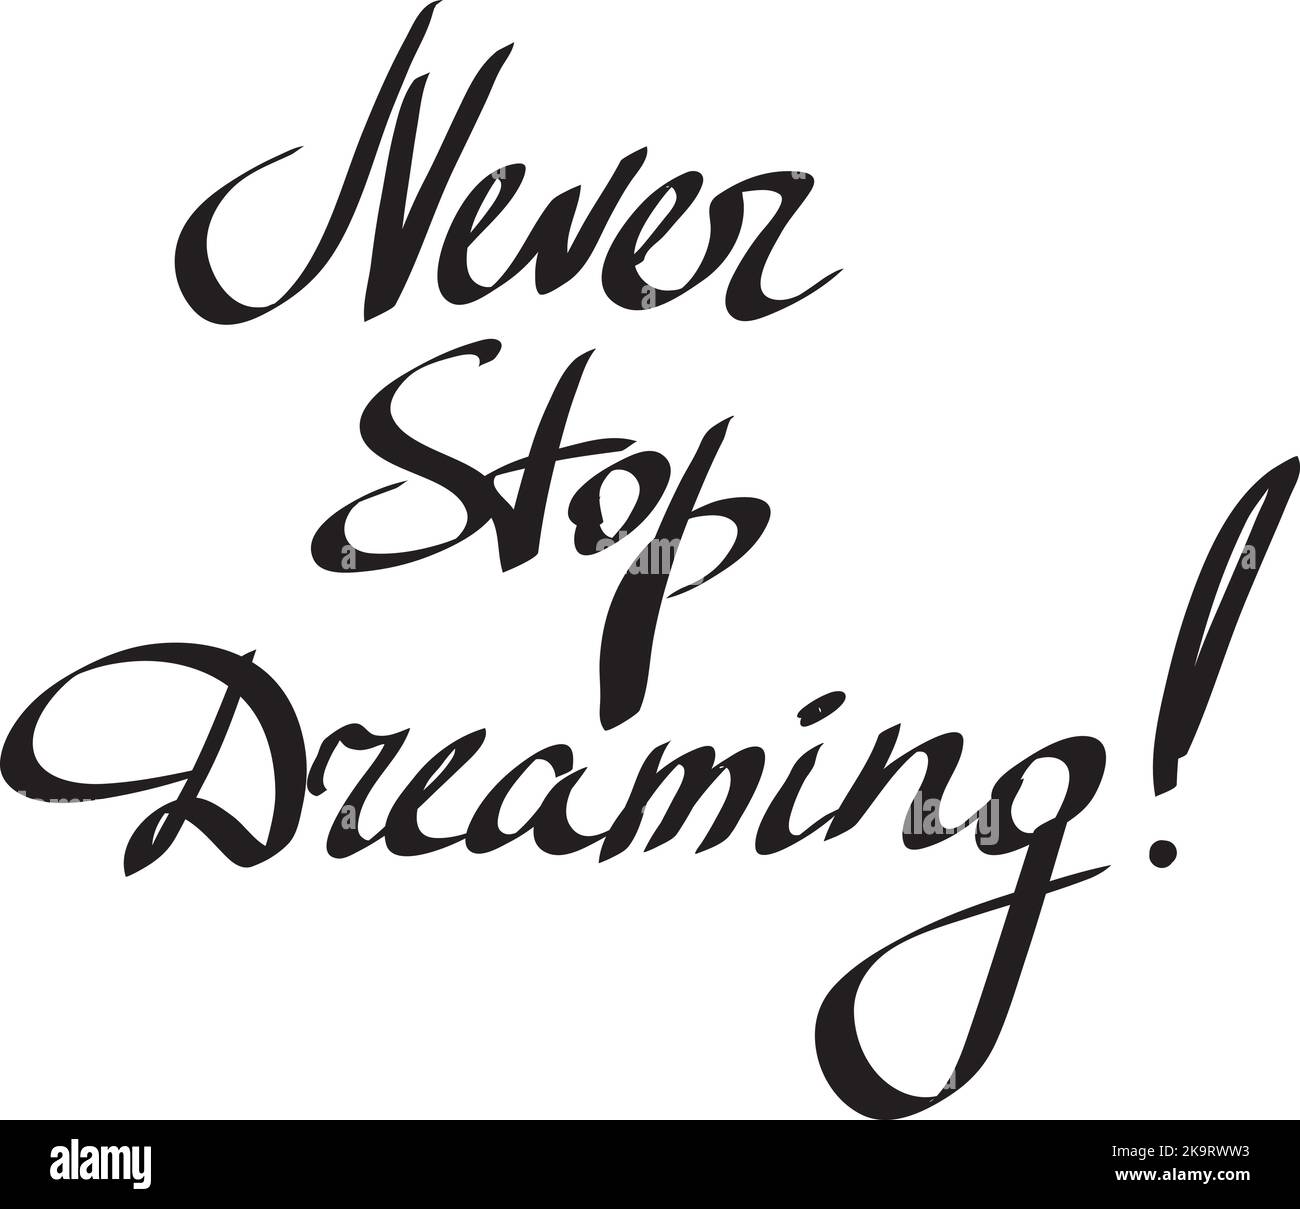 Nie aufhören zu träumen inspirierender Text auf weißem Hintergrund. Handgezeichnete Schriftzüge. Vektorgrafik. Stock Vektor